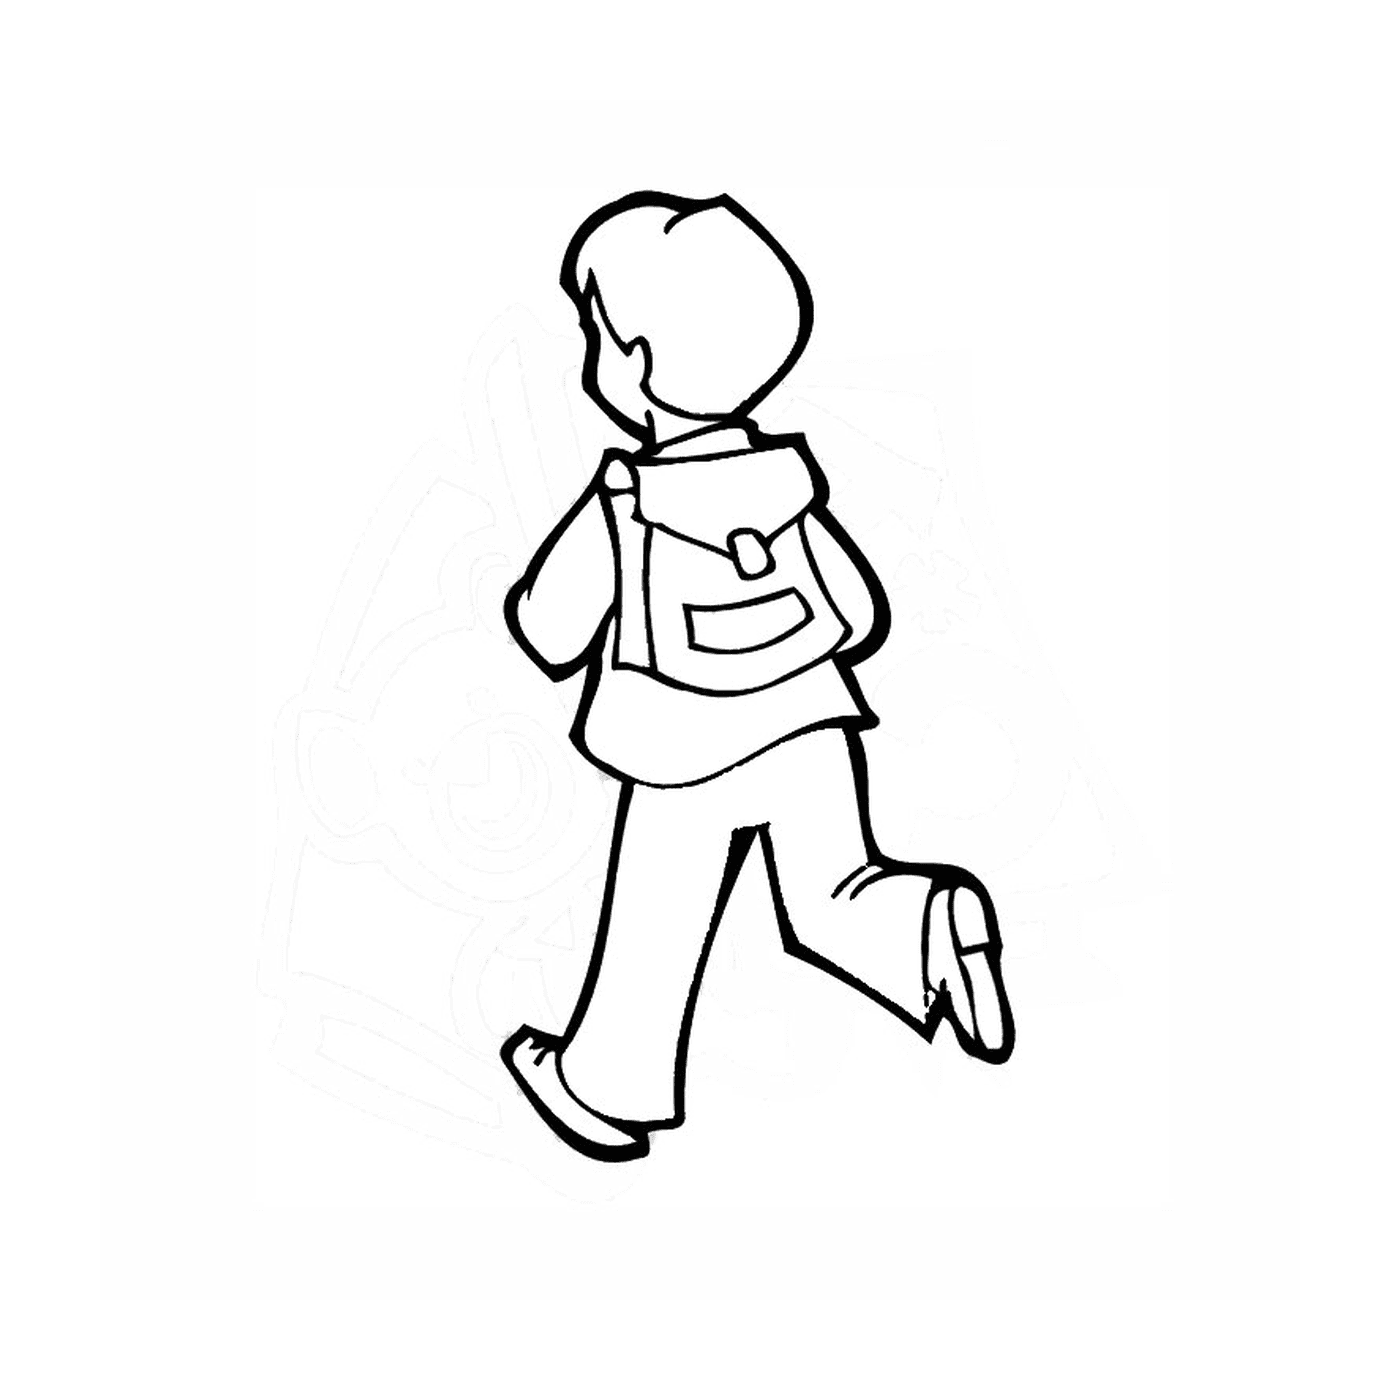  Vado a scuola: un ragazzo che cammina 